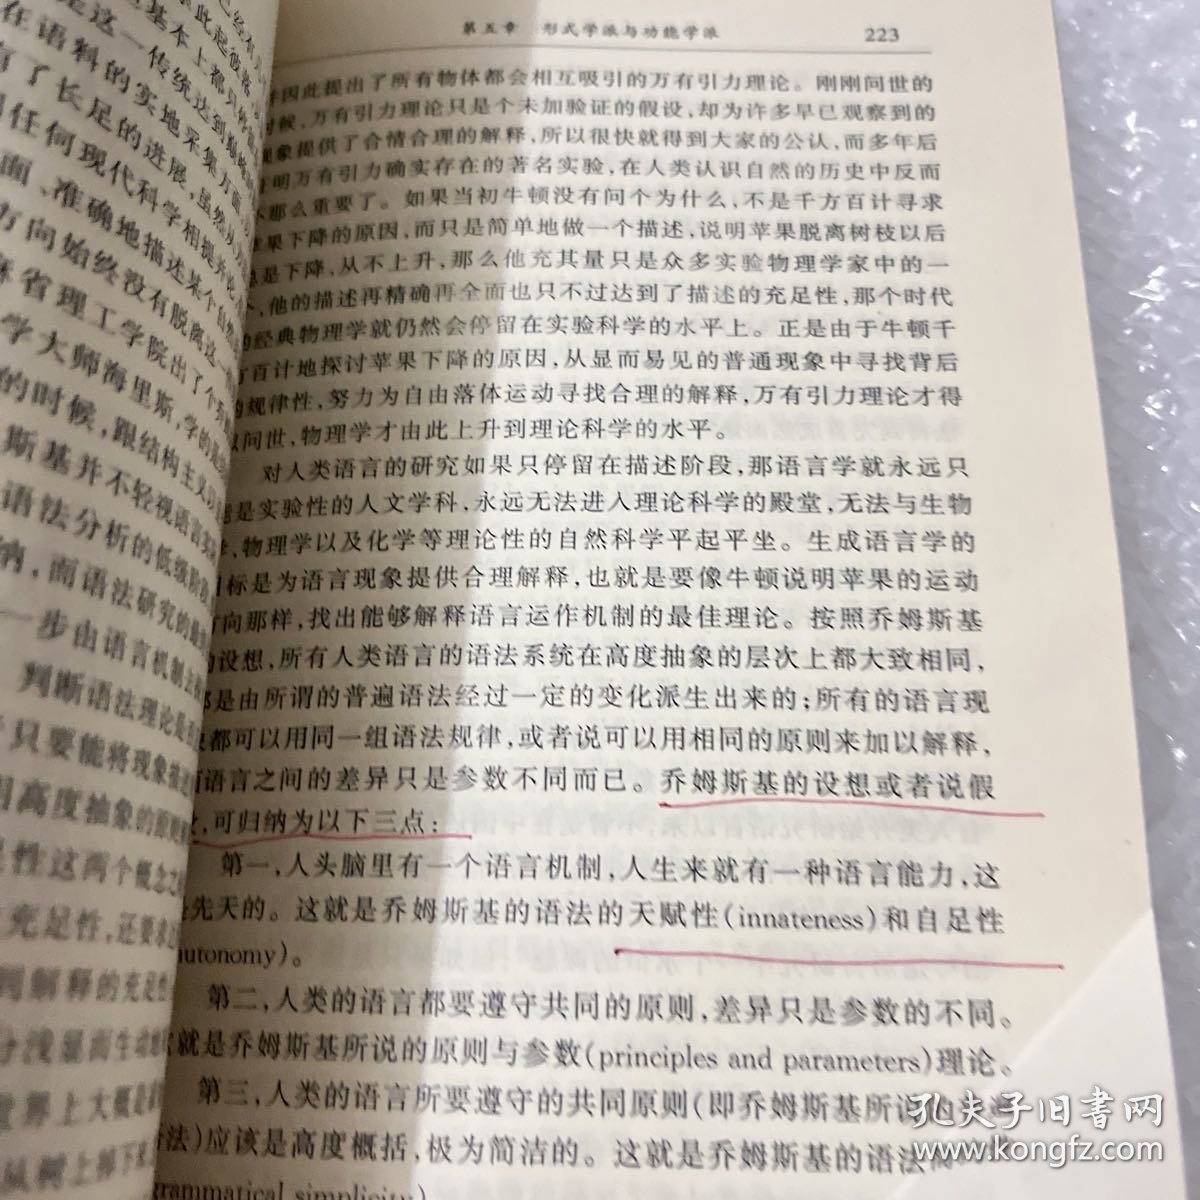 现代汉语语法研究教程 内页有划线痕迹